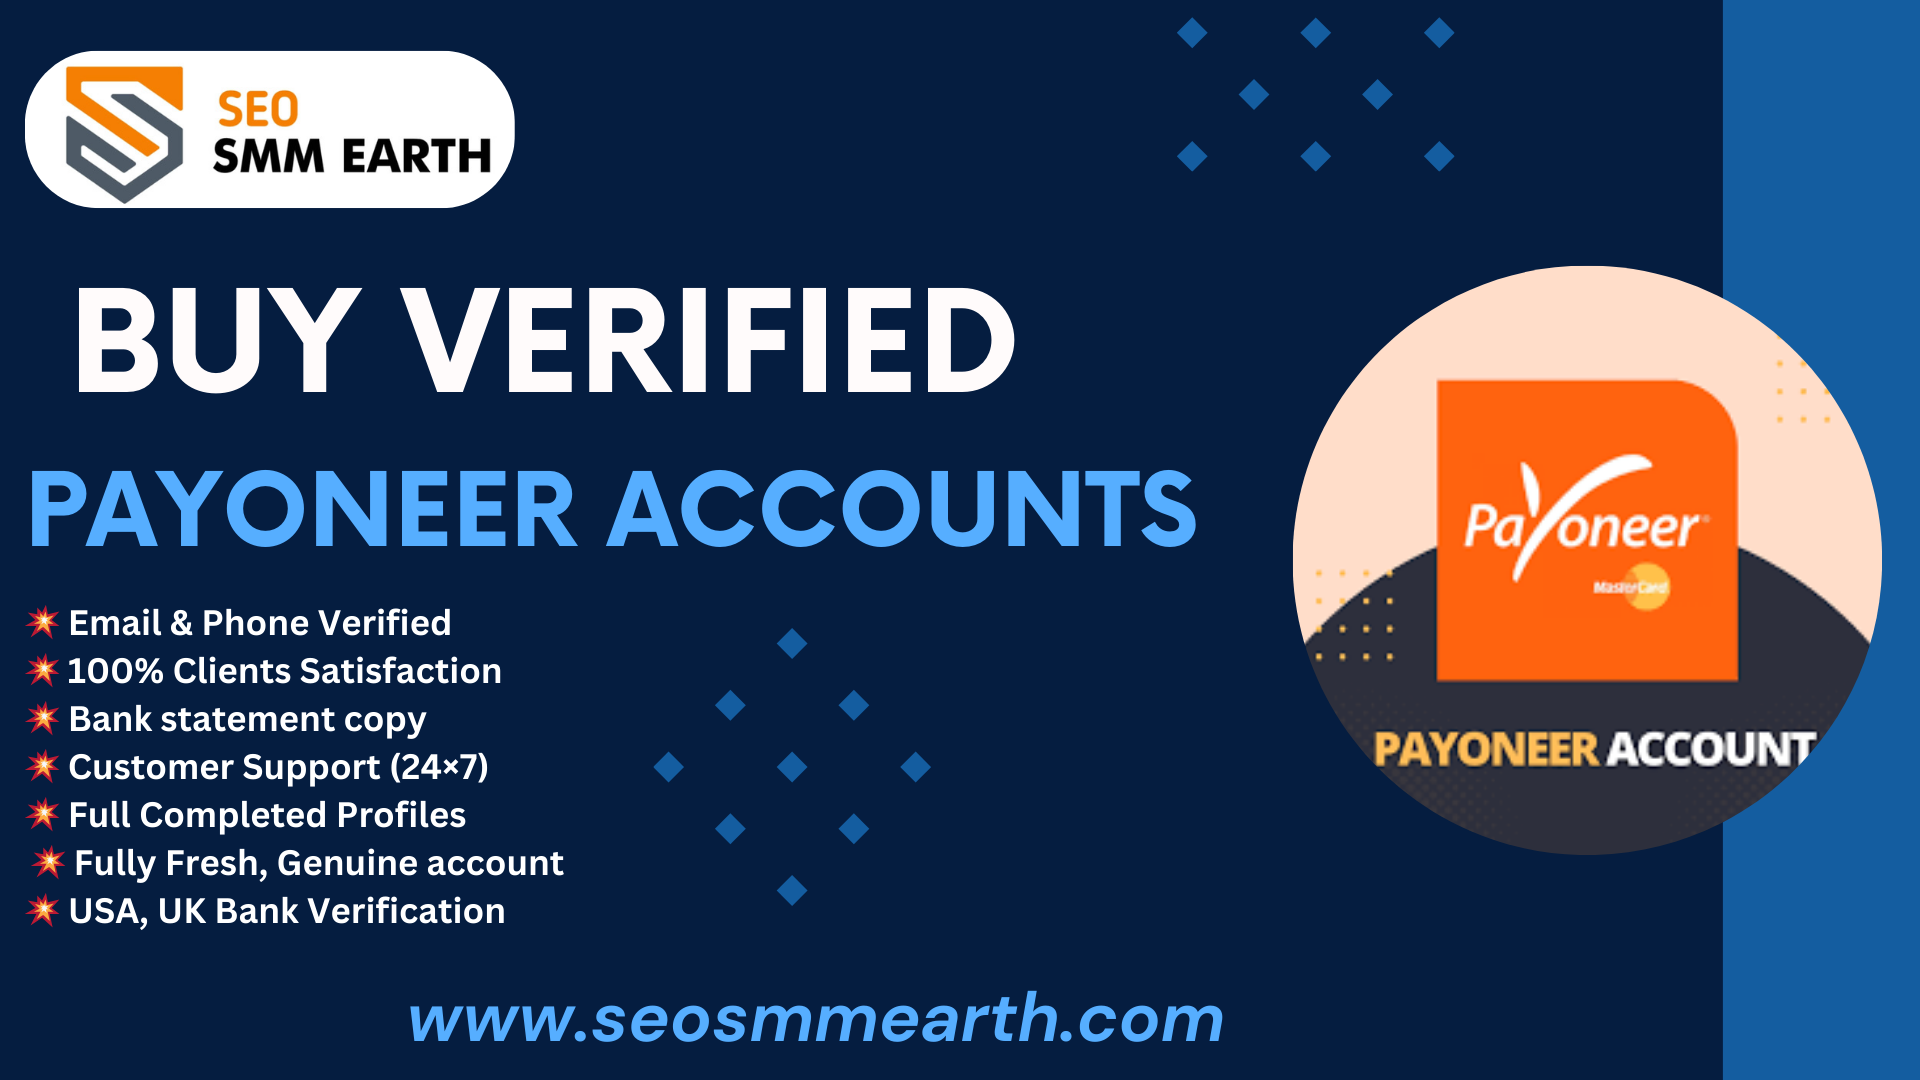 Buy Verified Payoneer Accounts - 100% Positive Payoneer Account